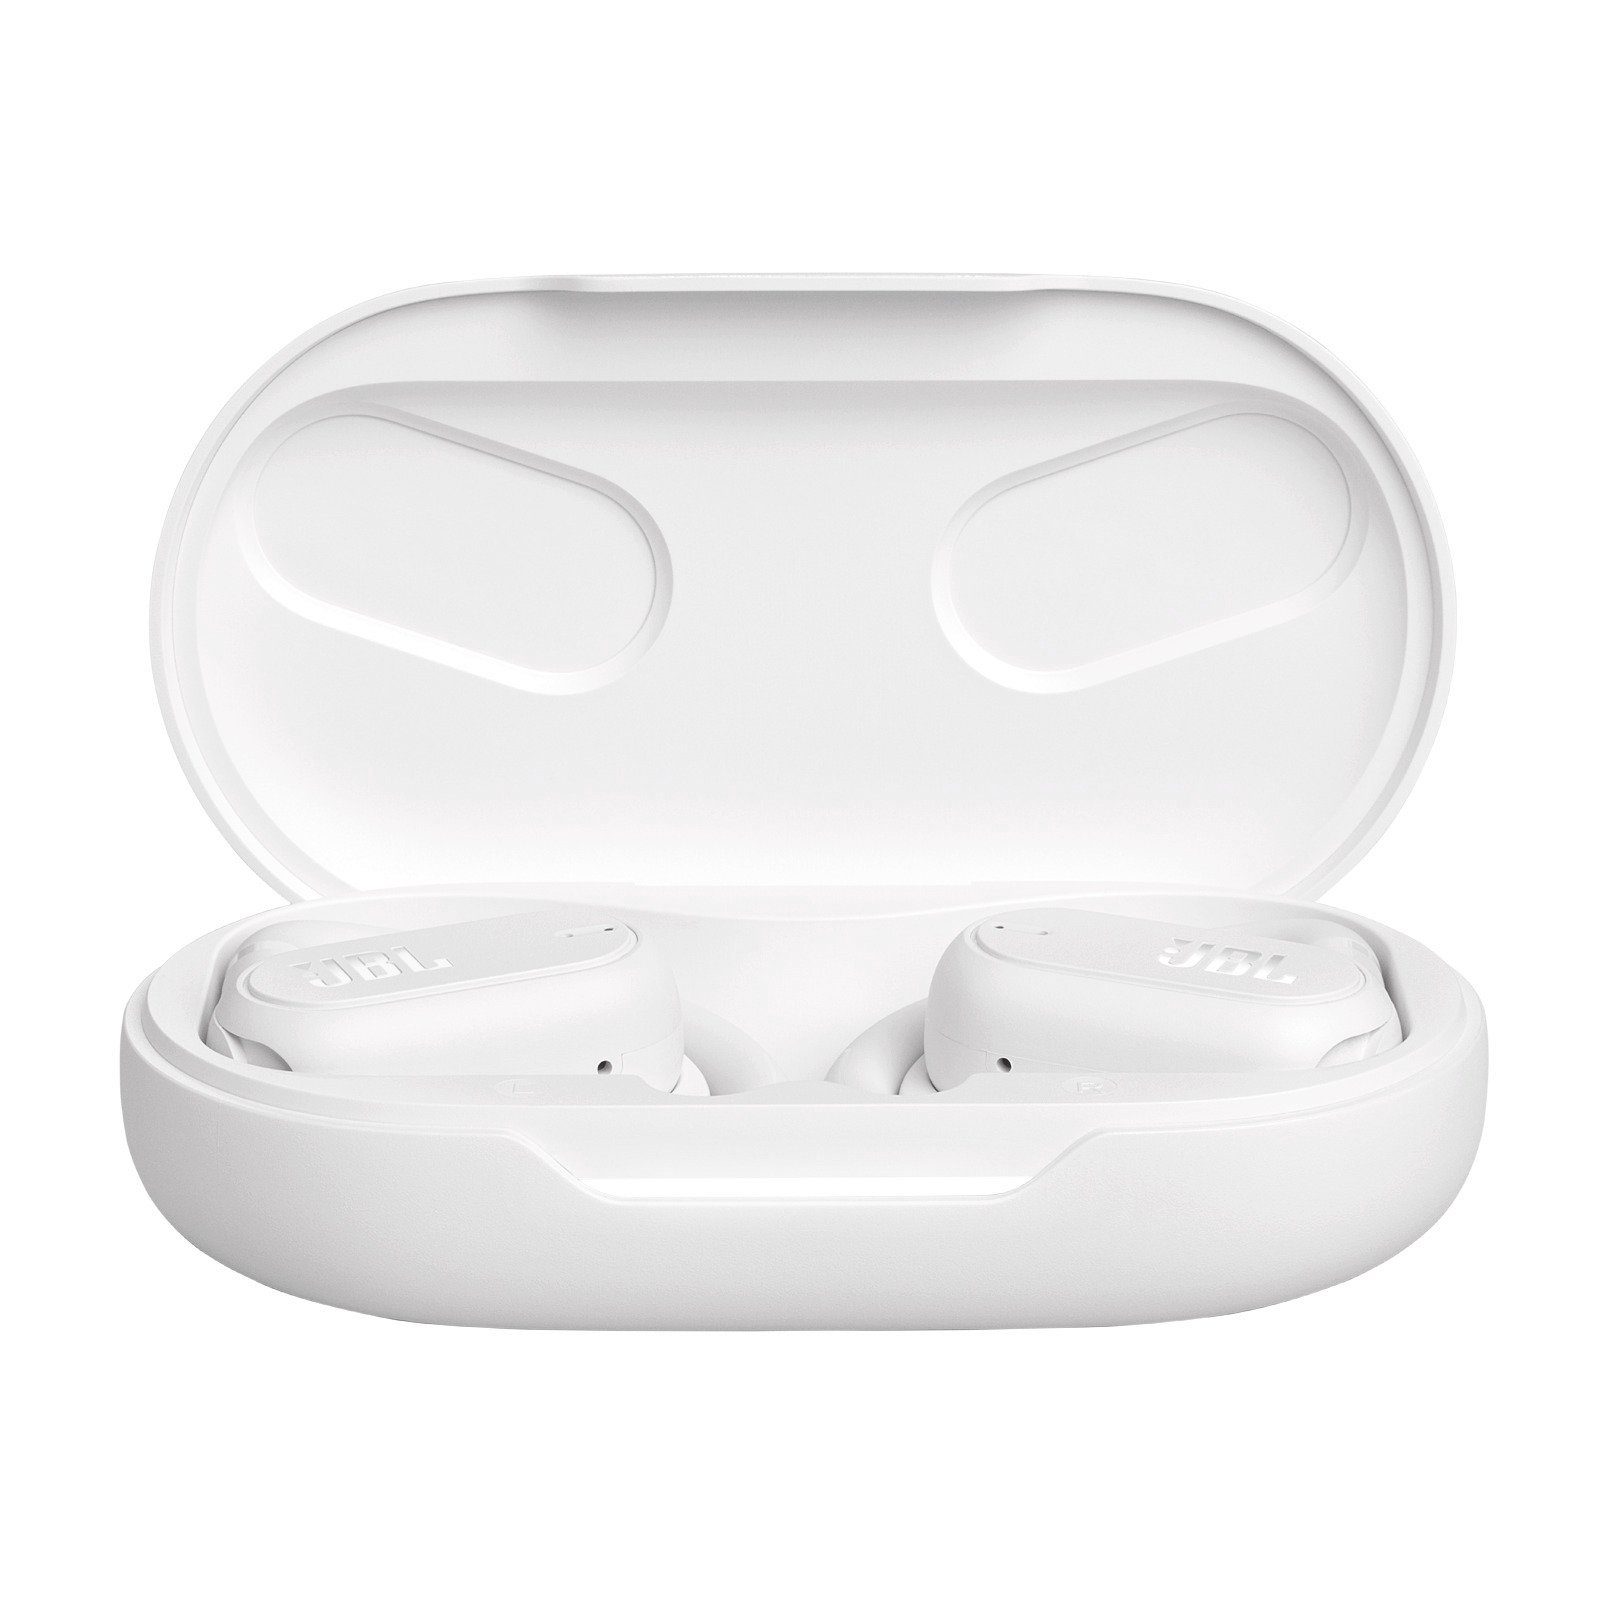 (HFP) In-Ear-Kopfhörer JBL Sense wireless Weiß Soundgear